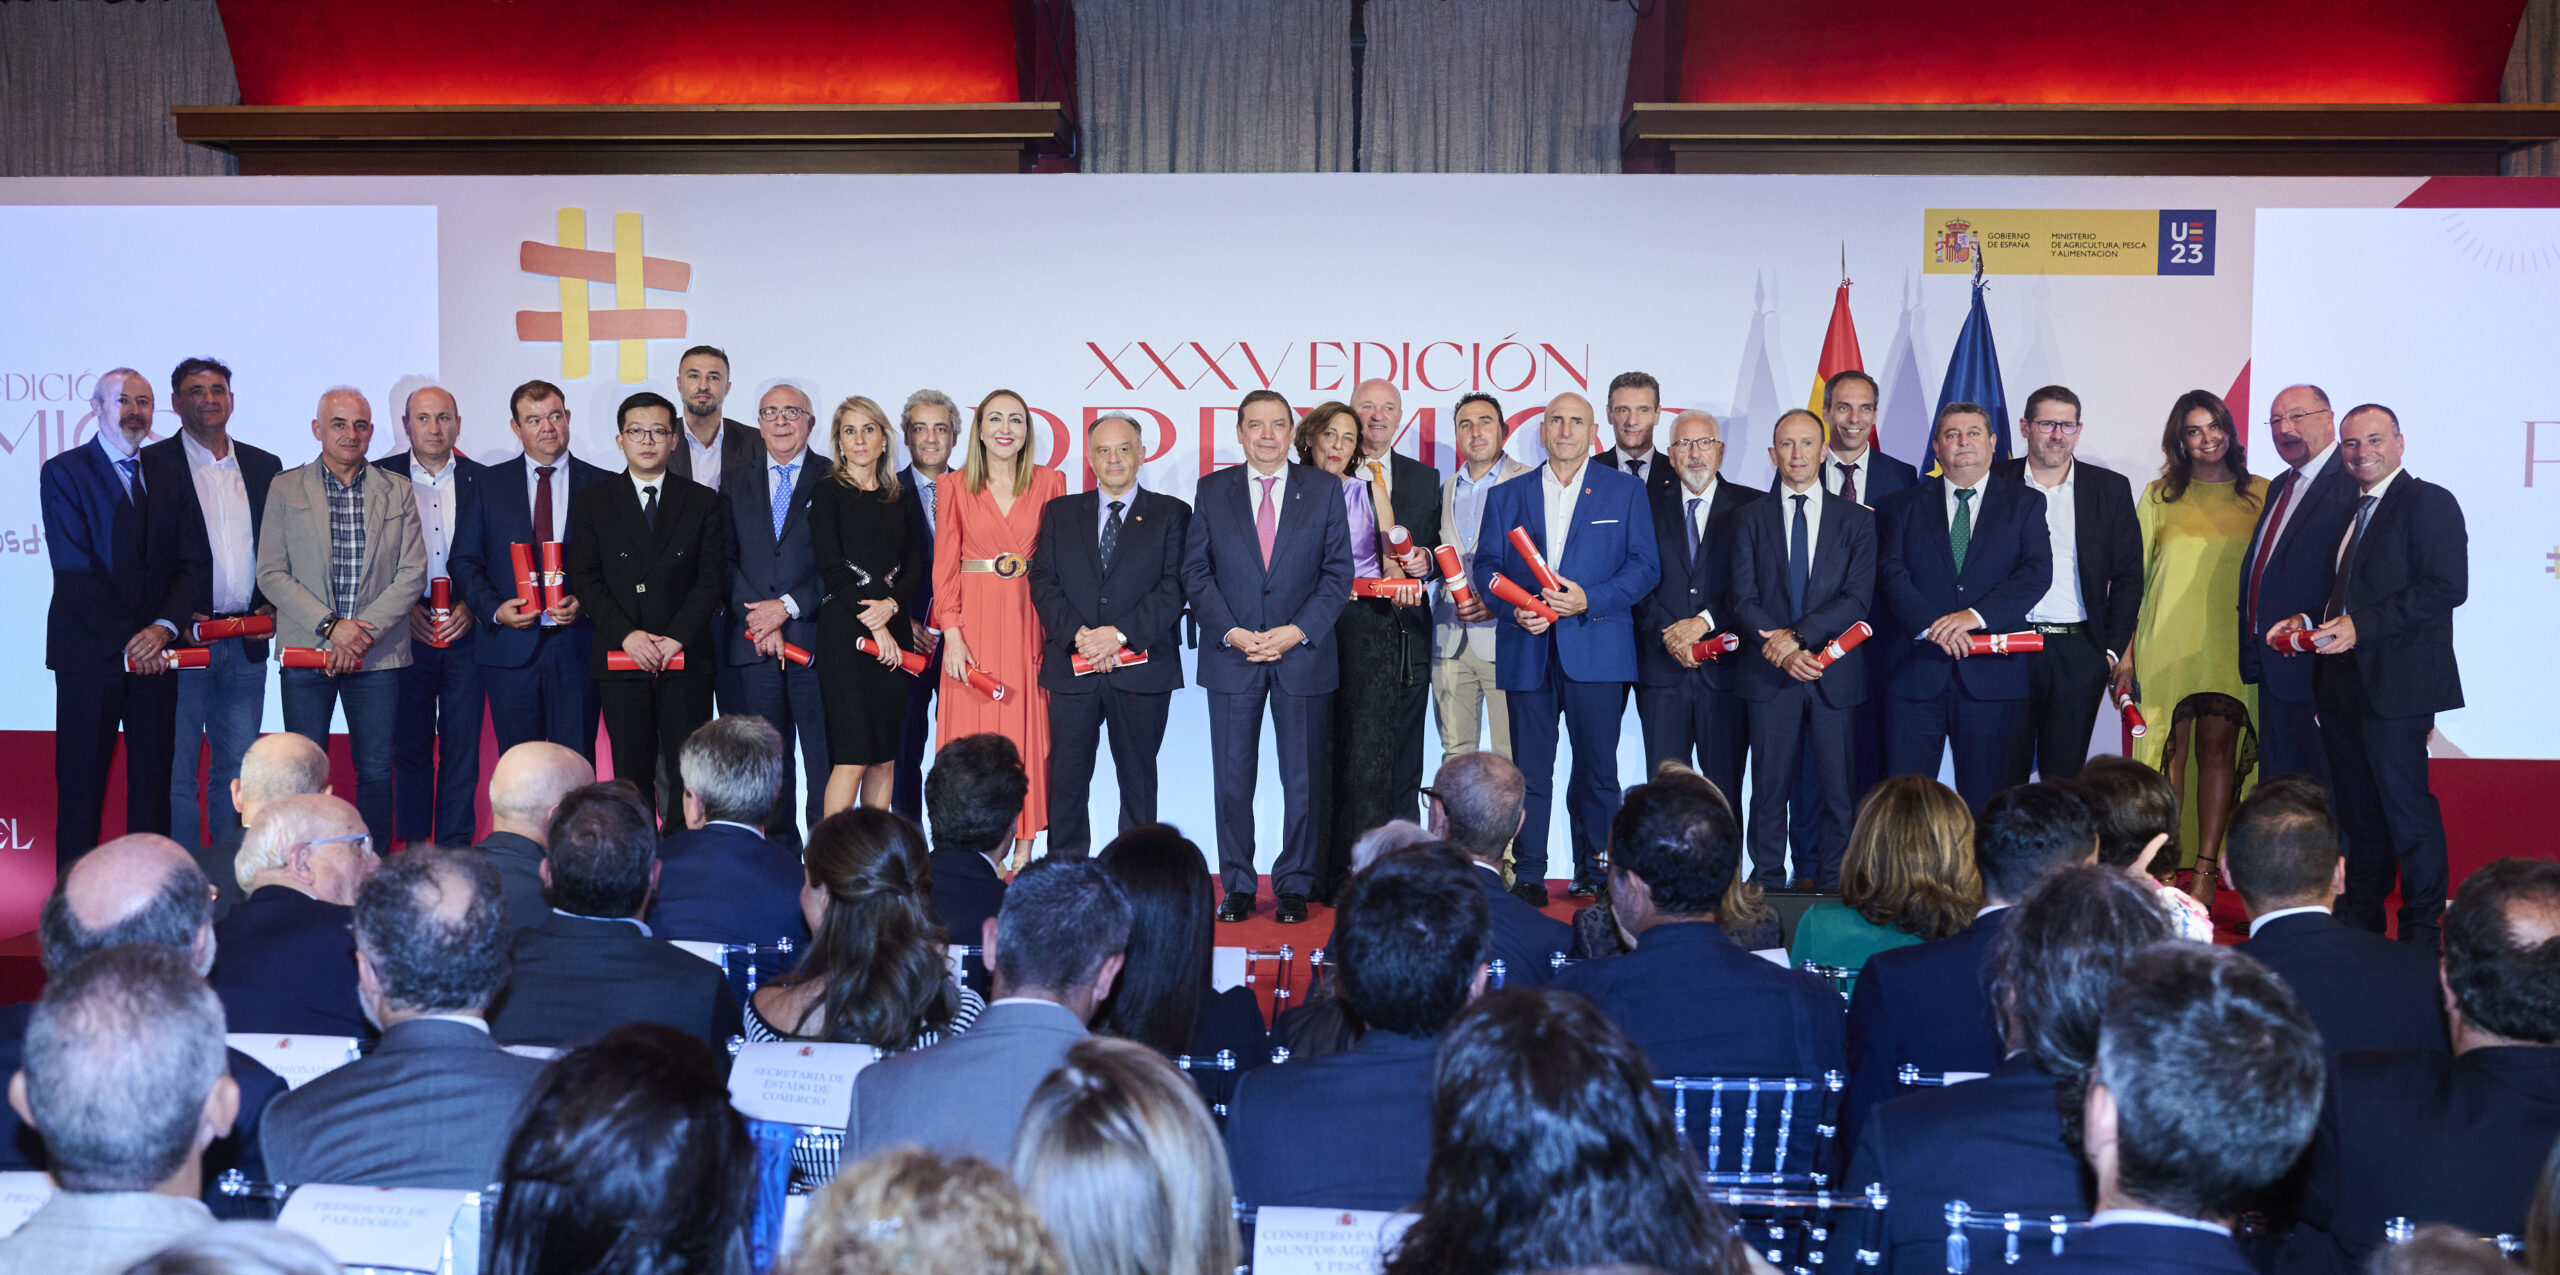 ASICI es galardonada con el Premio “Alimentos de España a la Promoción” por su campaña Despierta tu Sentido Ibérico